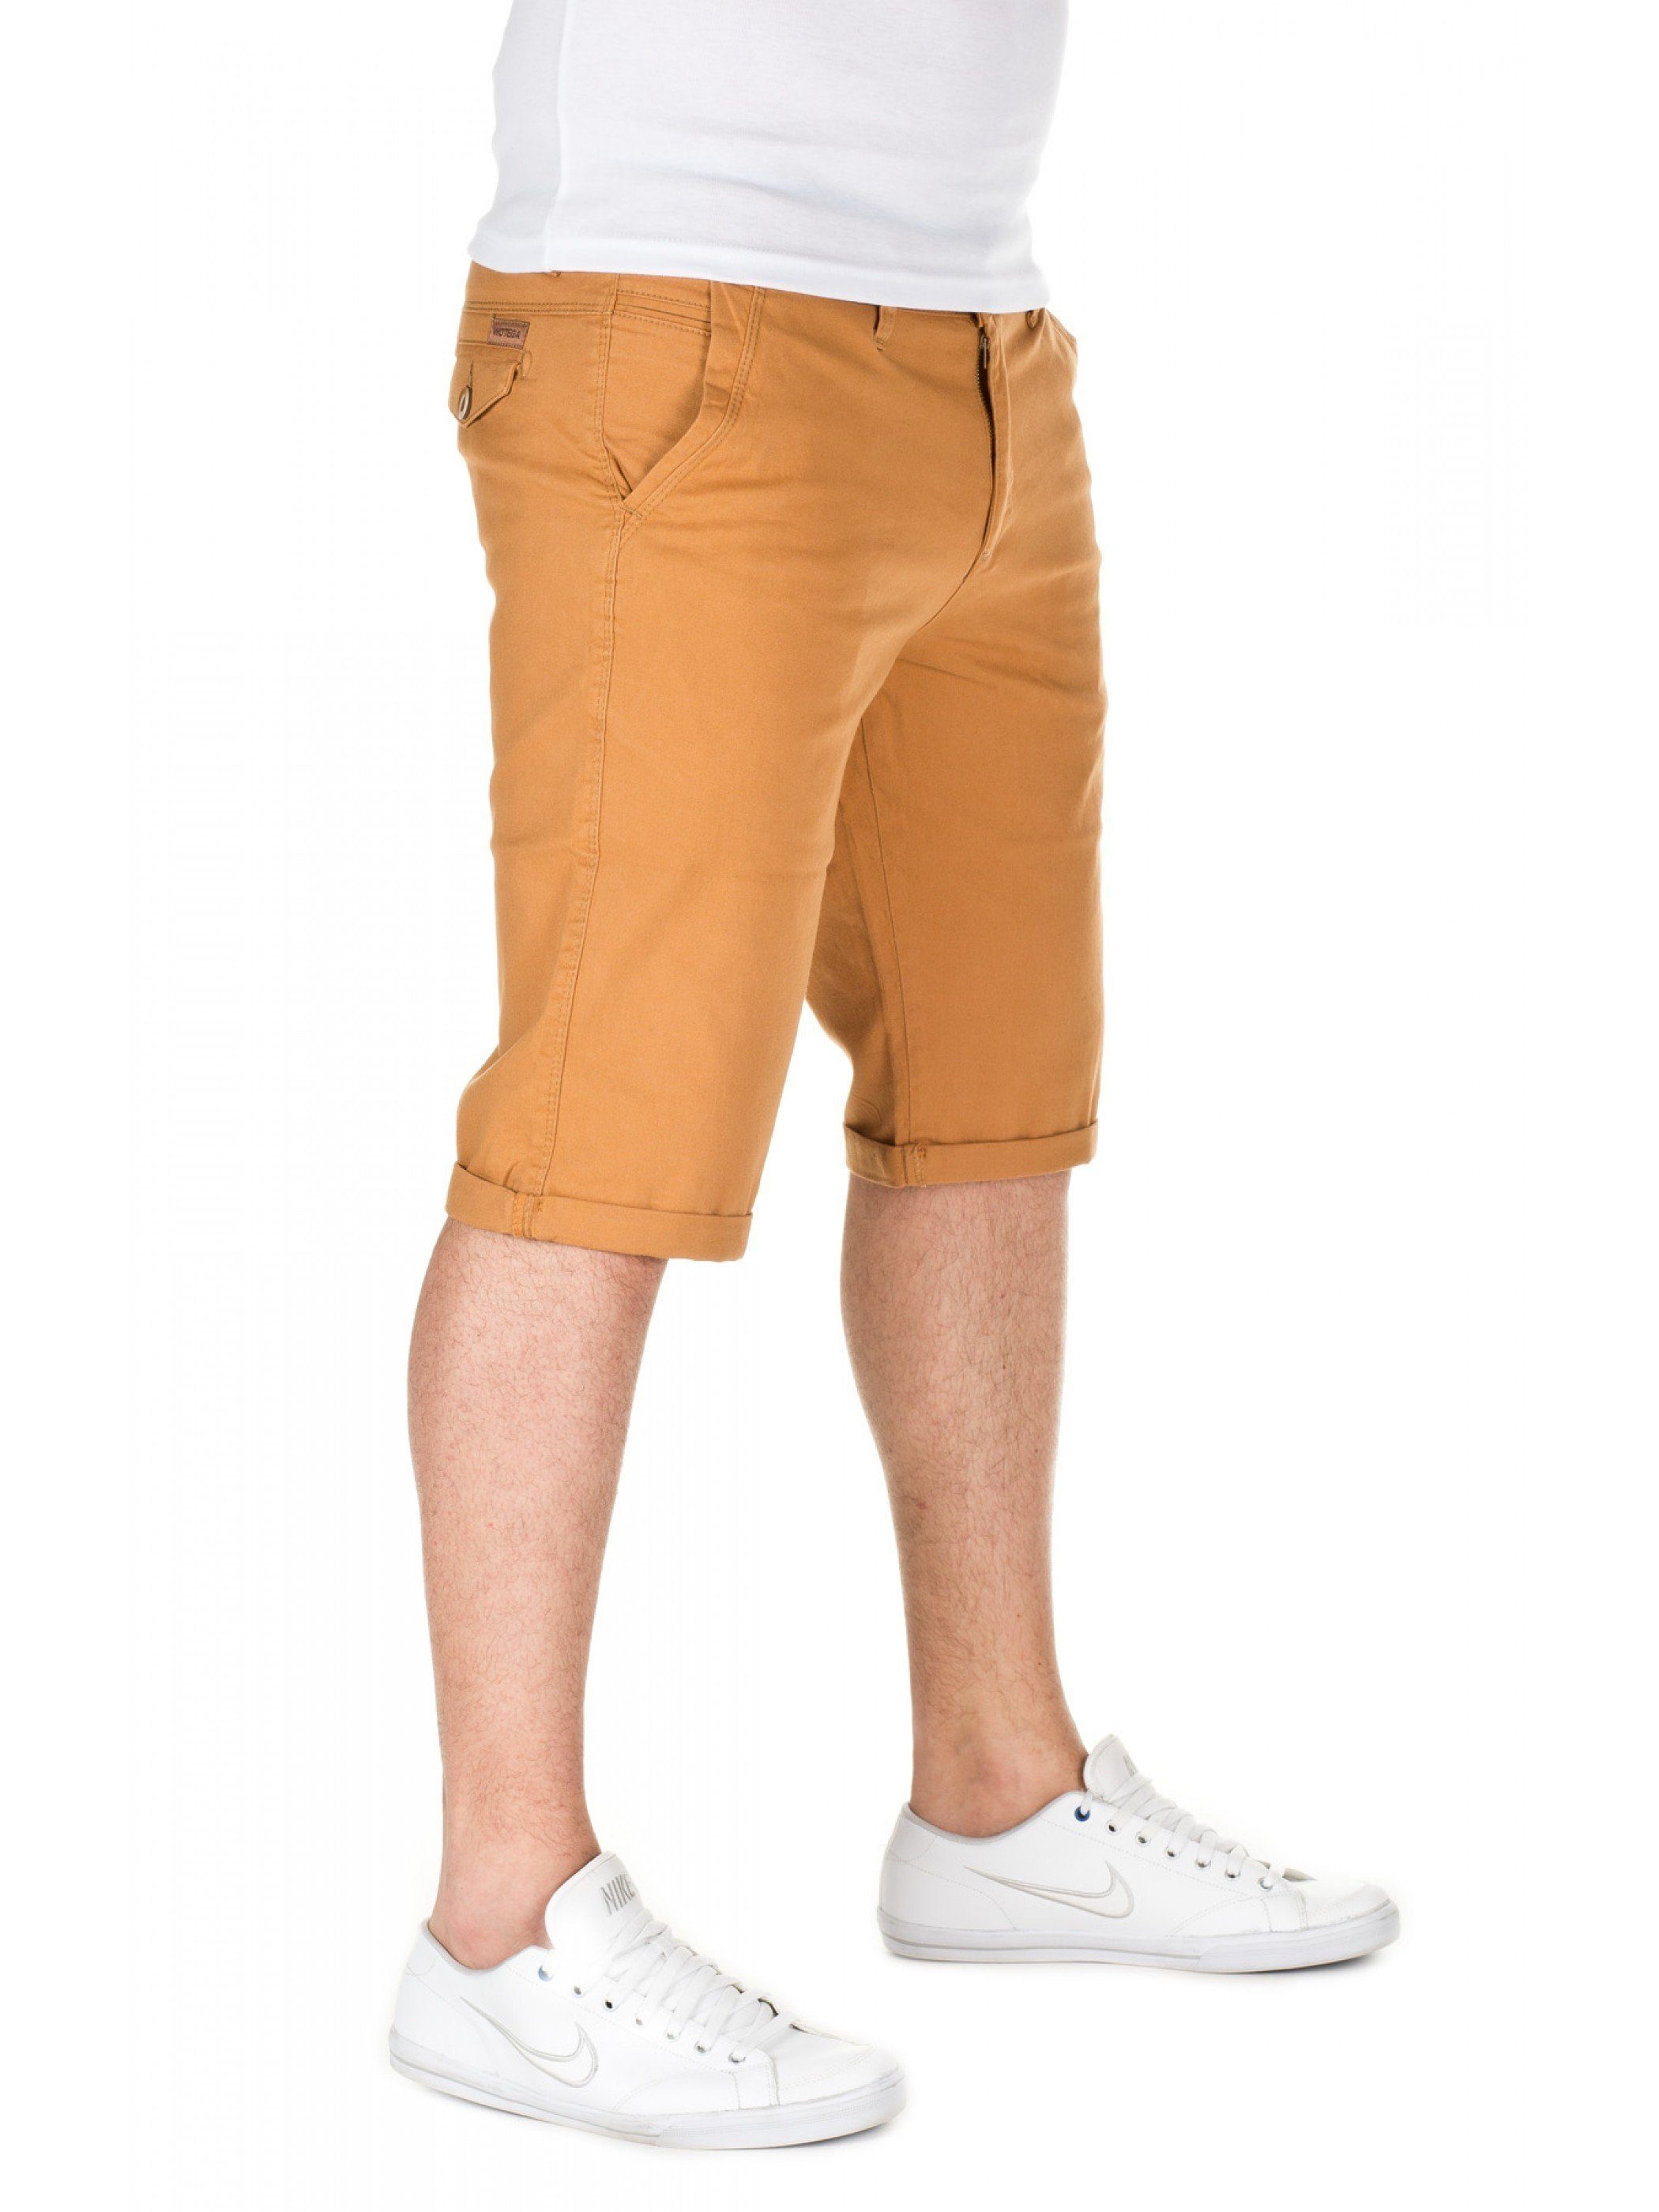 WOTEGA in shorts Goldfarben (mustard Shorts gold Unifarbe Alex Chino - WOTEGA 82295)